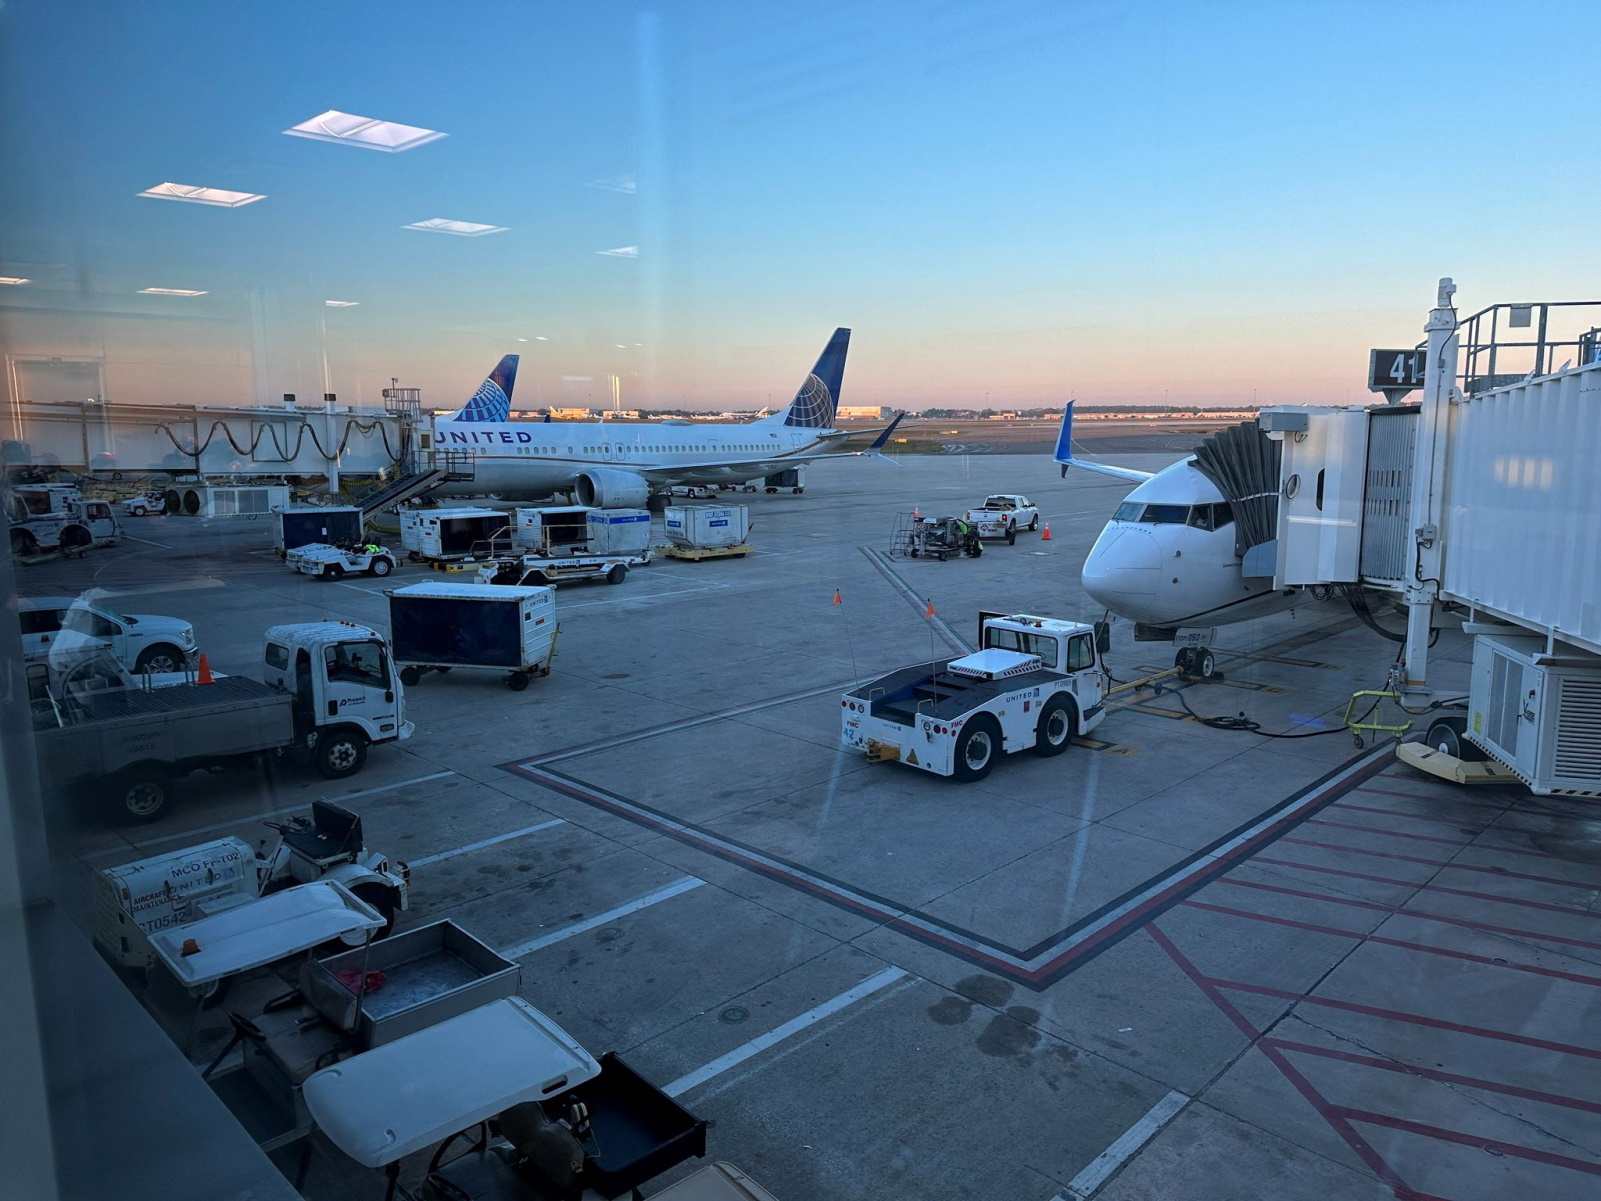 ΗΠΑ: «Ένας φάκελος δεδομένων προκάλεσε το χάος με τις πτήσεις» λέει η FAA